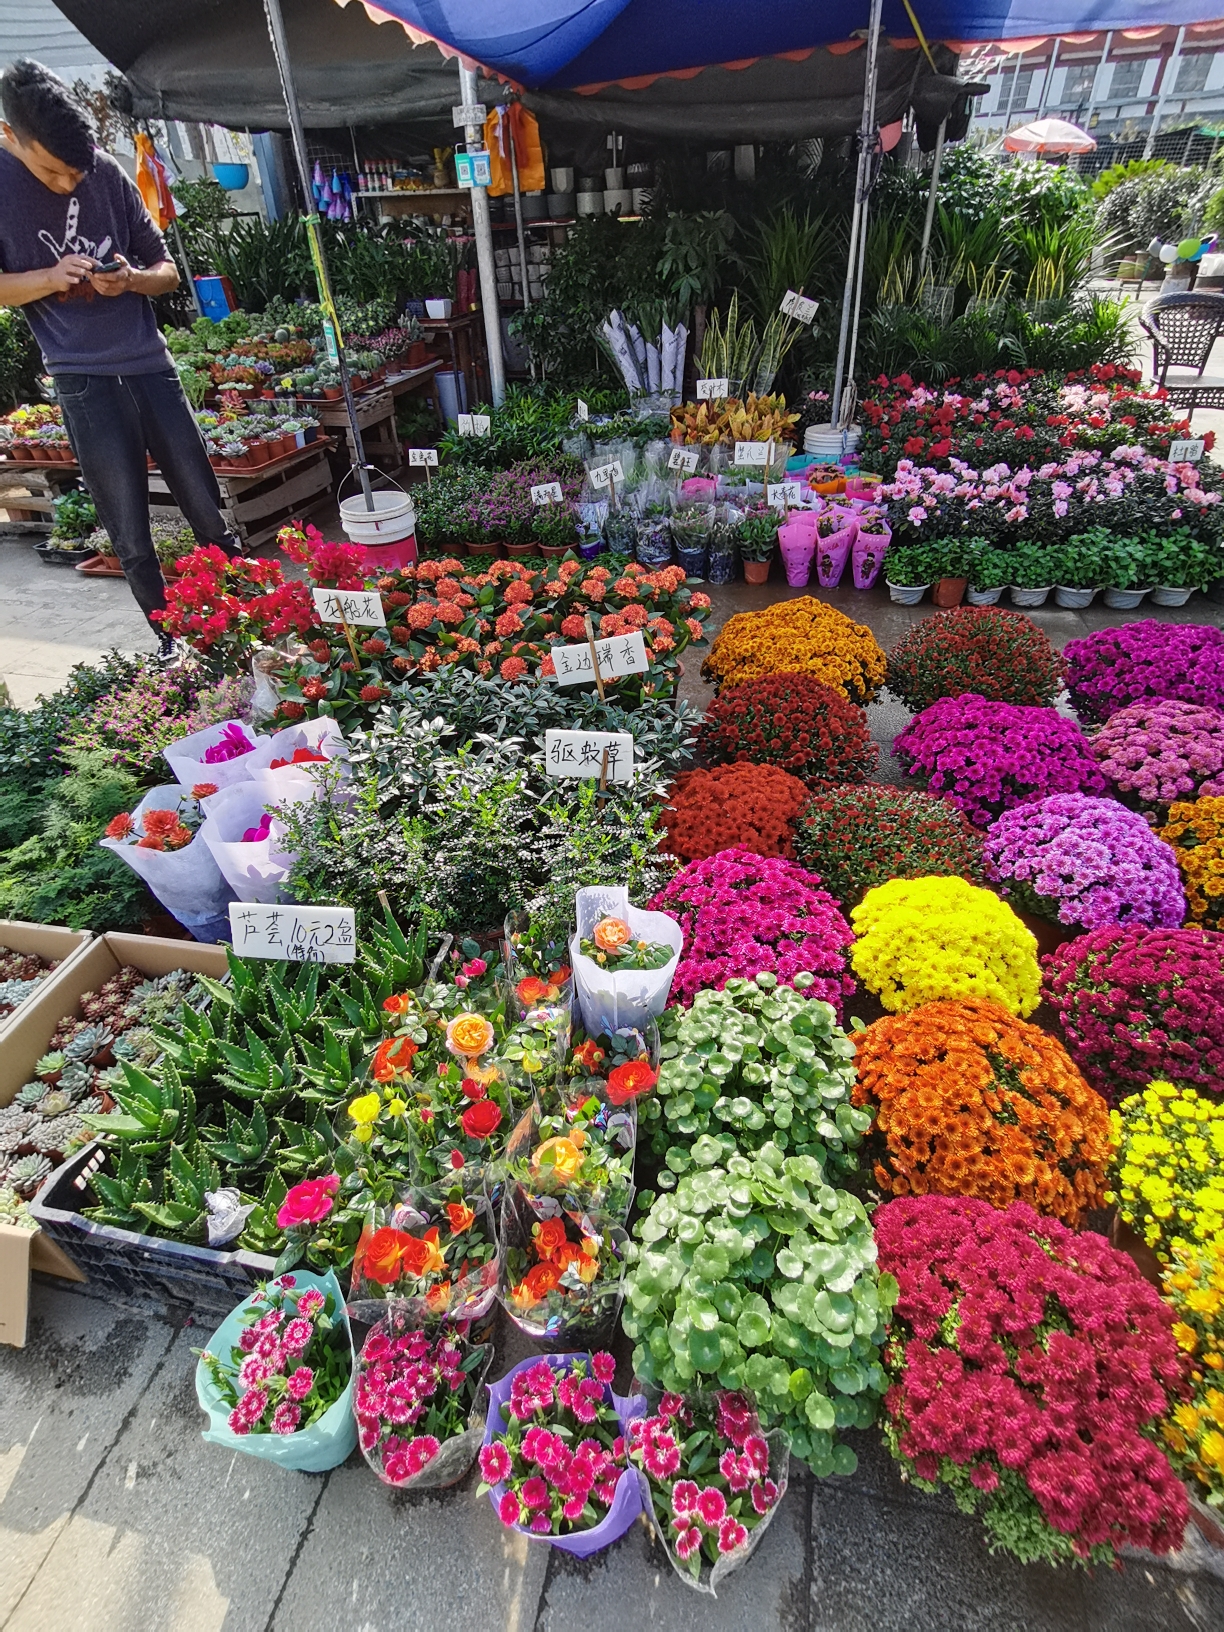 西安市长乐花卉市场掠影